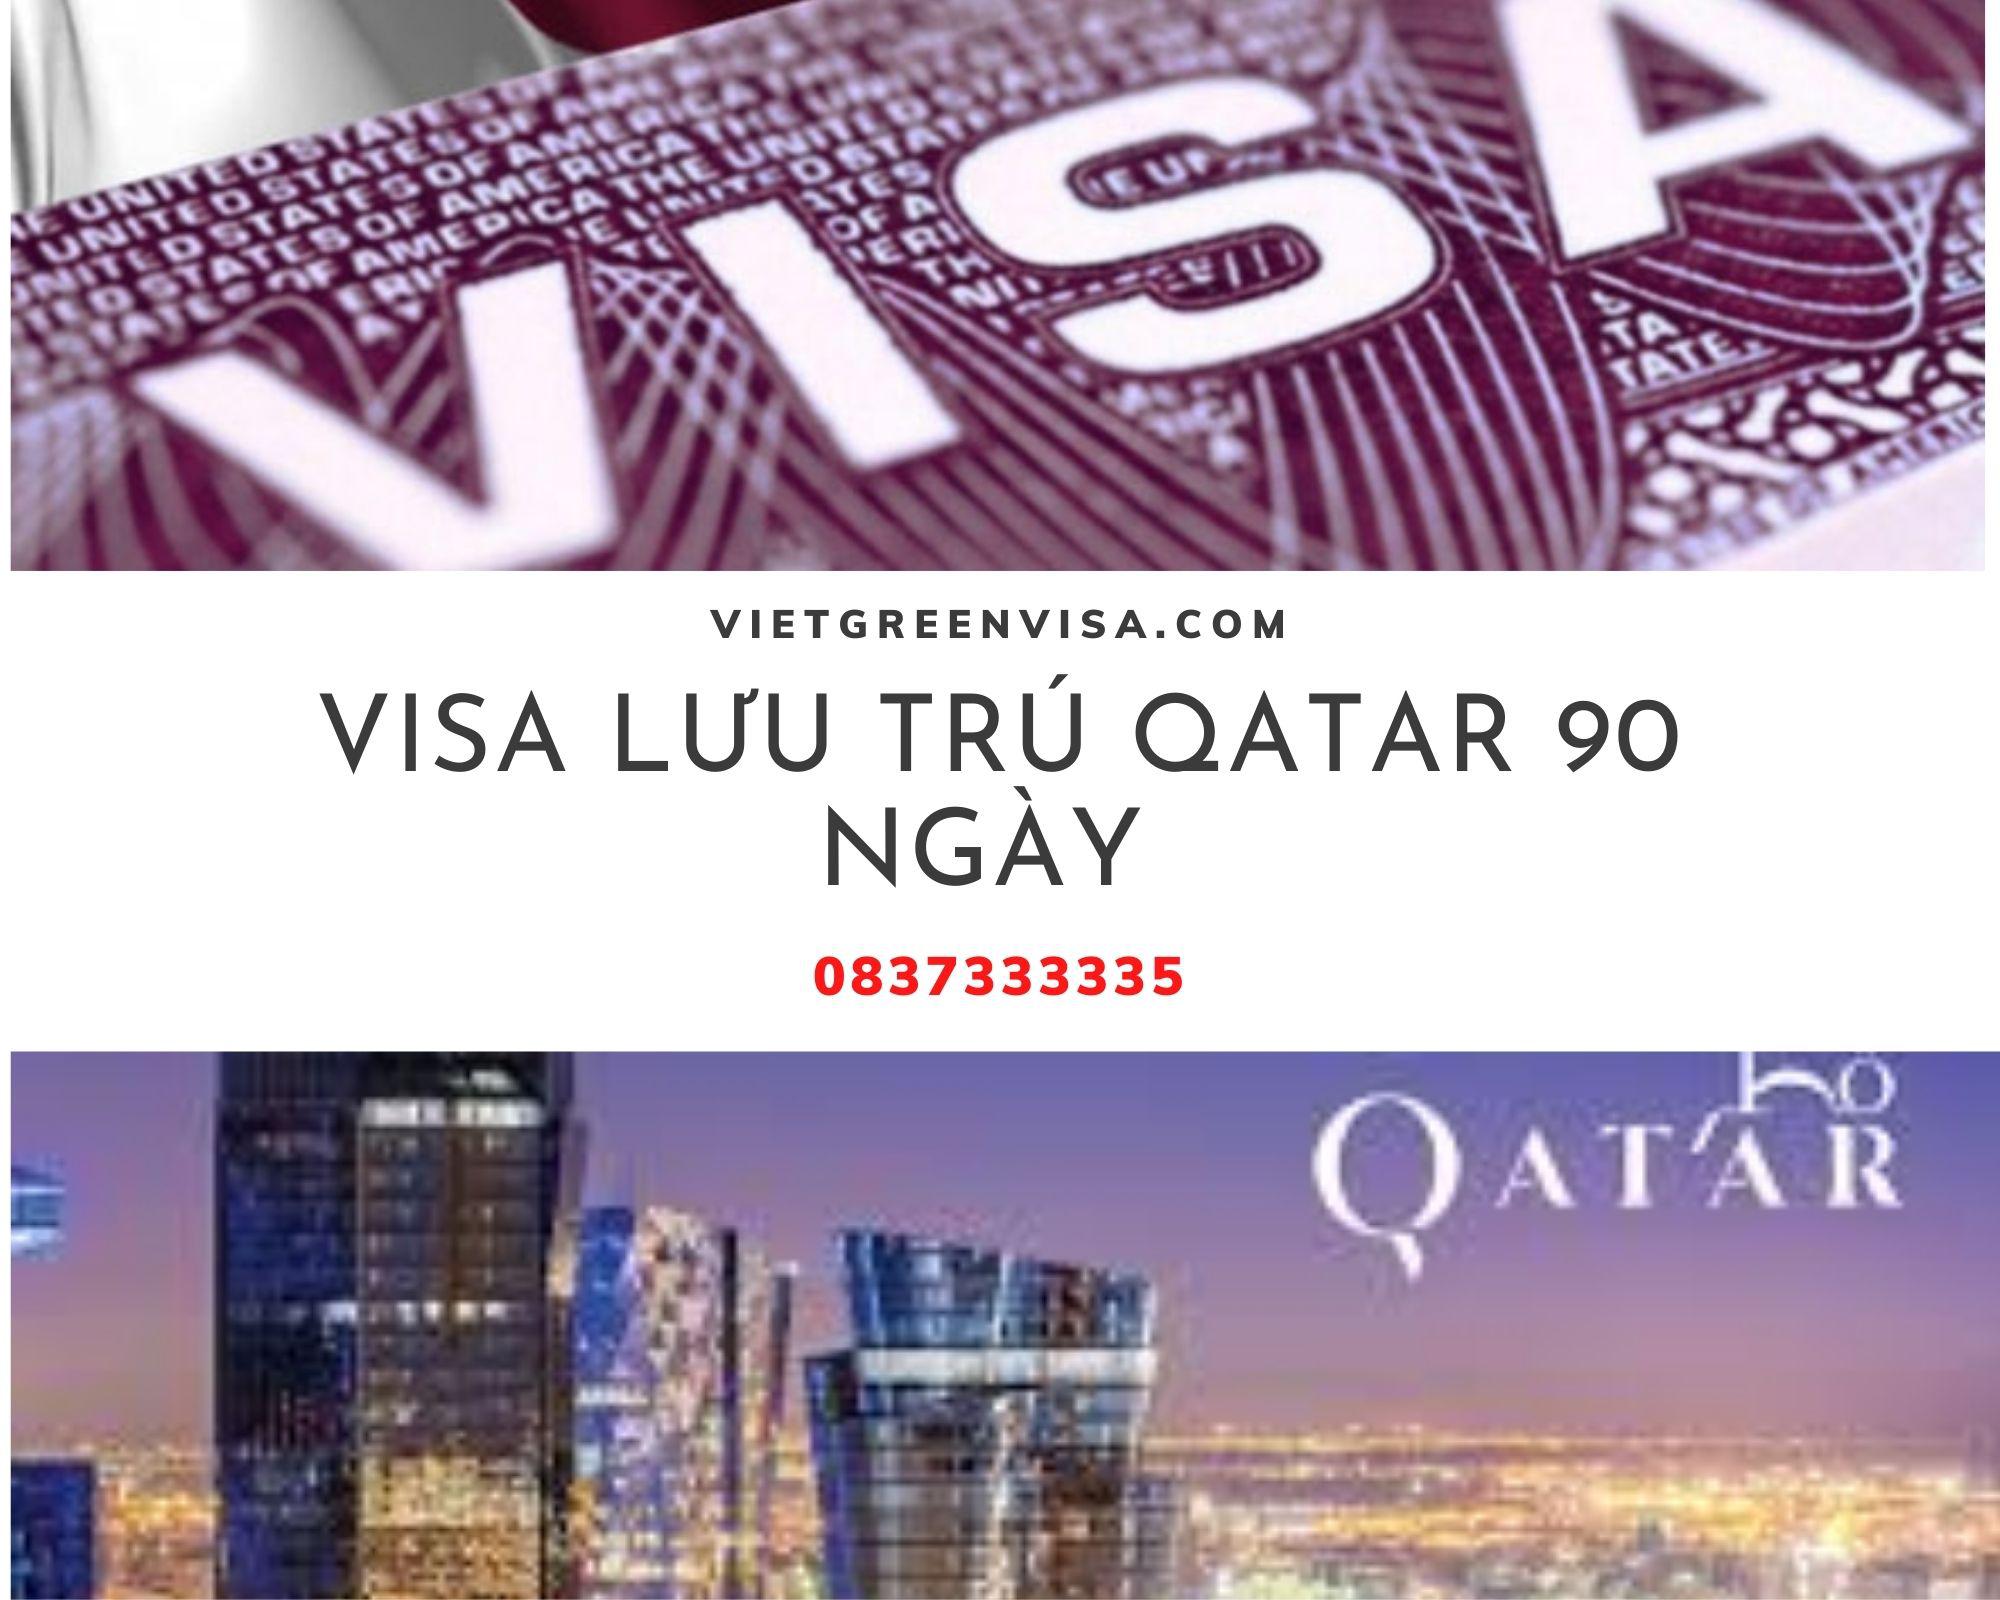 Dịch vụ làm visa Qatar du lịch lưu trú 90 ngày giá rẻ